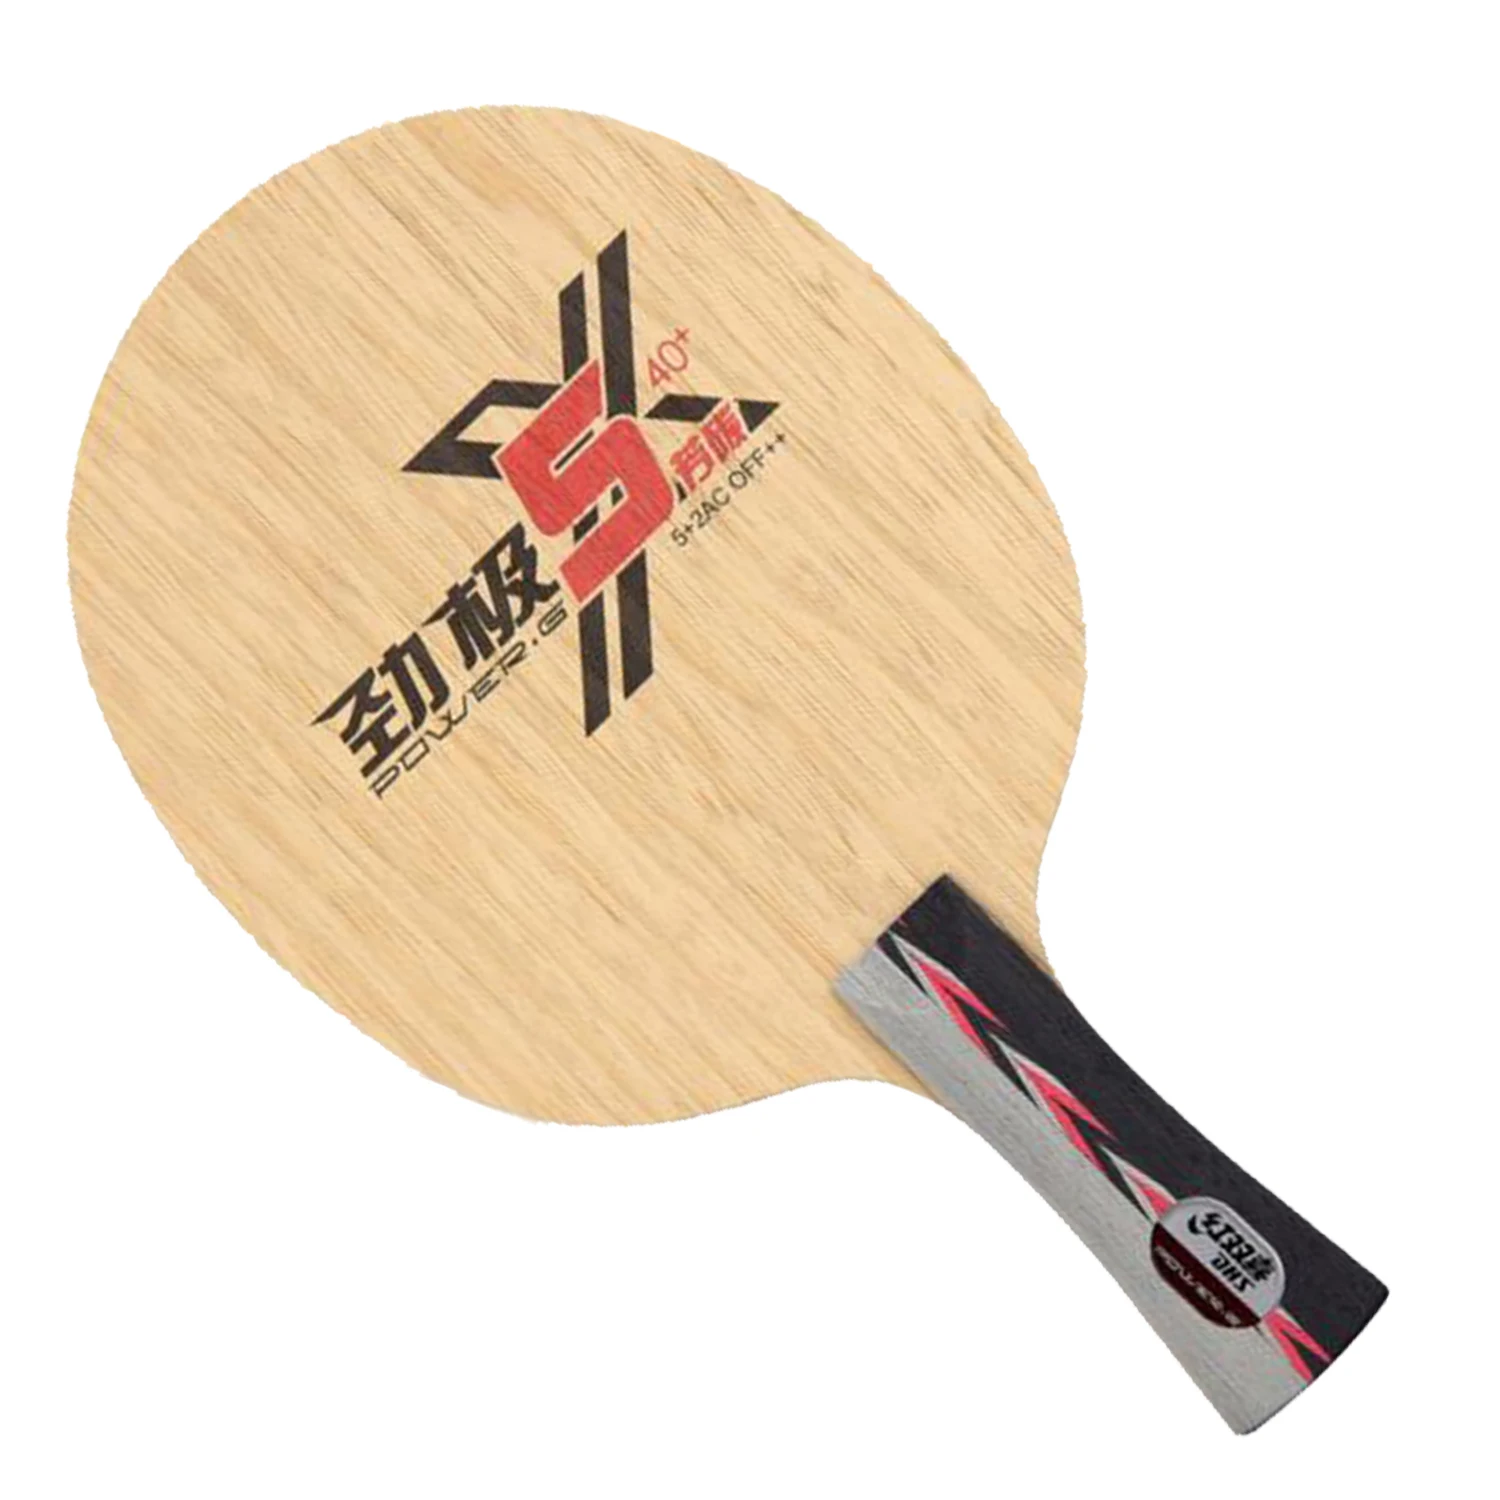 Ракетка для настольного тенниса DHS power G PG5X, карбоновая ракетка для настольного тенниса, быстрая атака с петлей, пинг-понг, оригинал